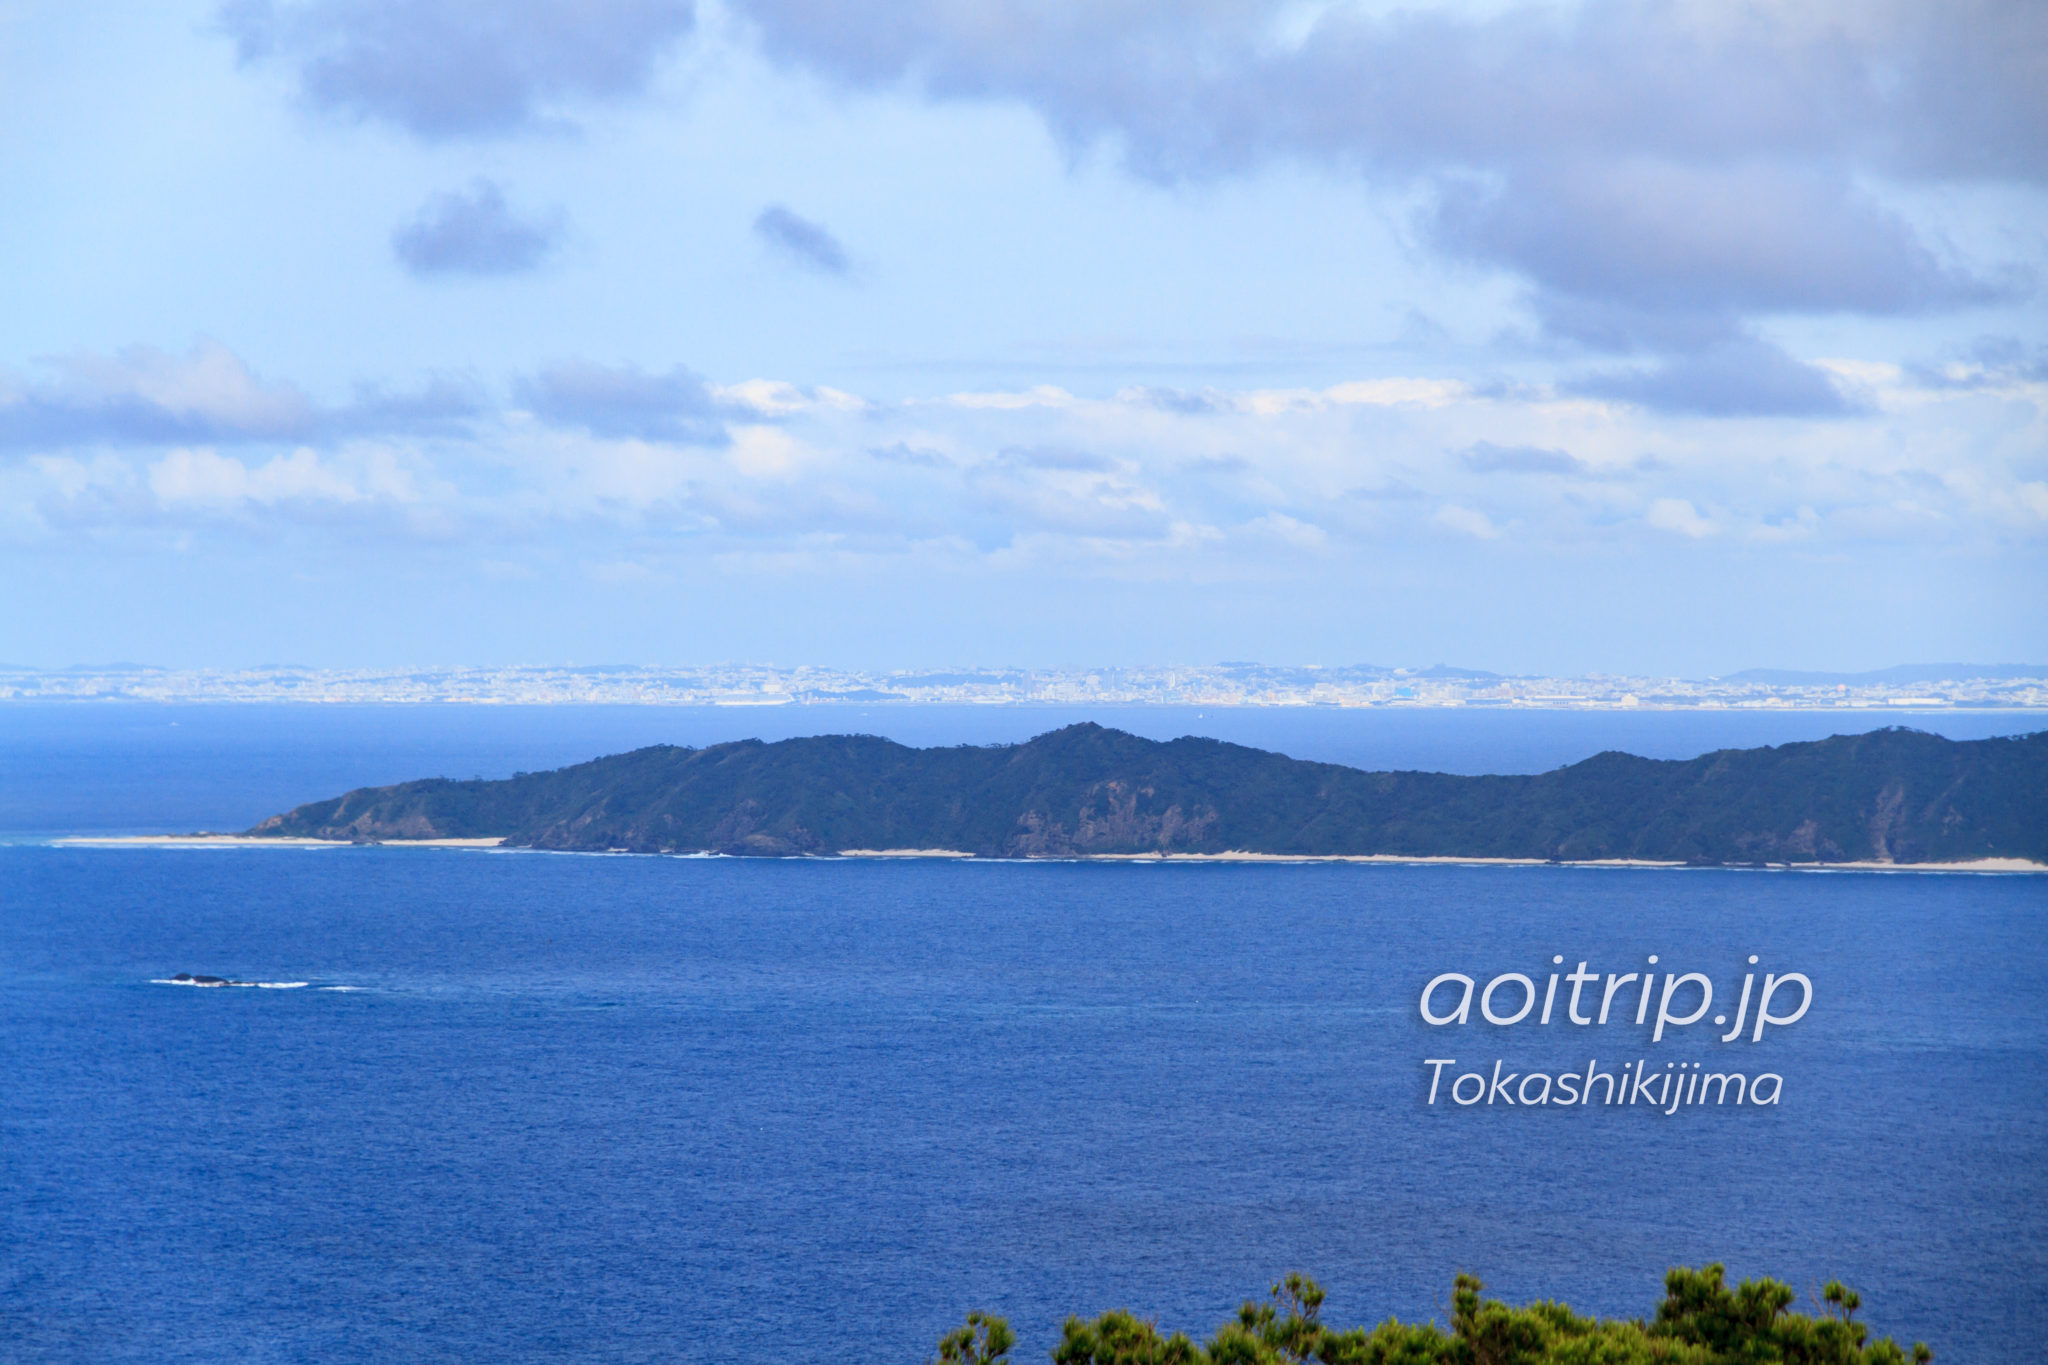 渡嘉敷島の赤間山展望台から望む沖縄本島と前島